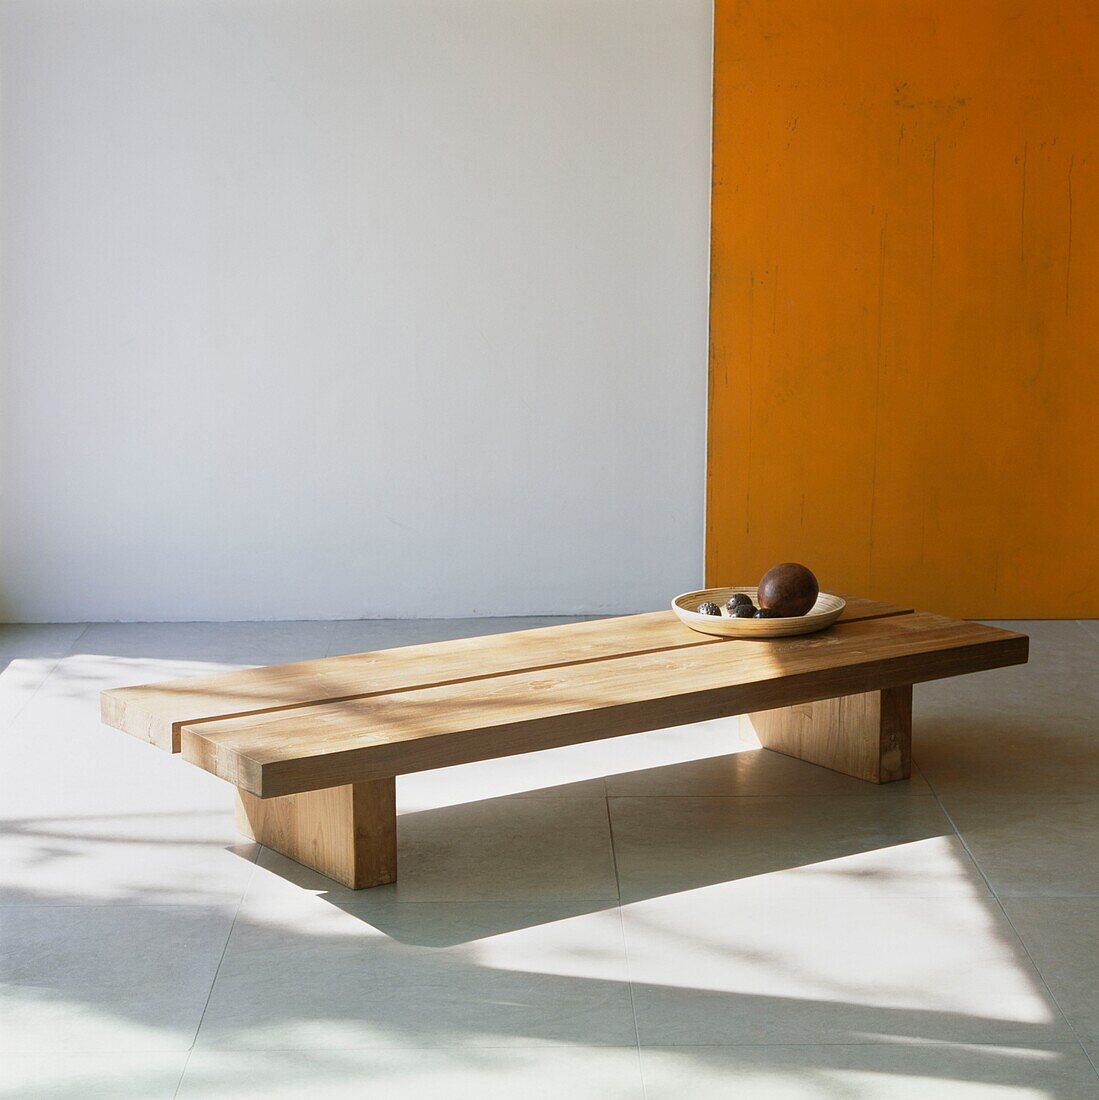 Klobiger Holzcouchtisch mit Holzschale auf Steinfliesenboden mit orangefarbener Wand